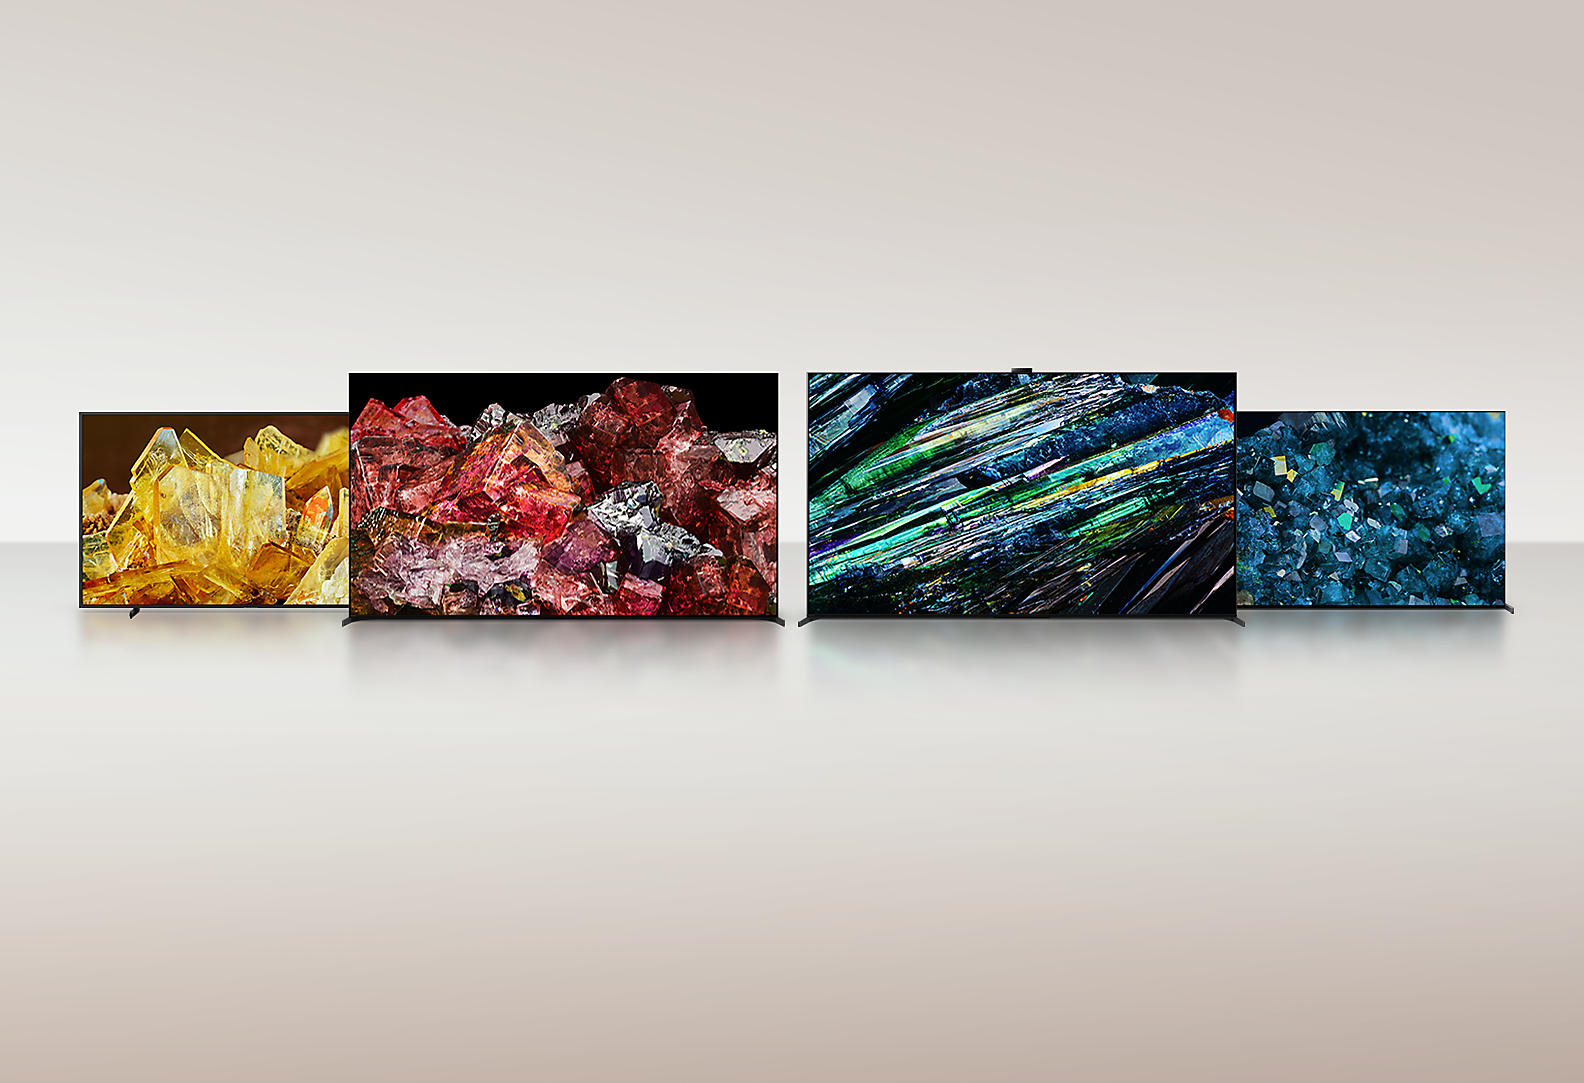 Fire BRAVIA XR-TV-er viser bilder over hele skjermen av ulike typer krystaller med utrolige detaljer og farger